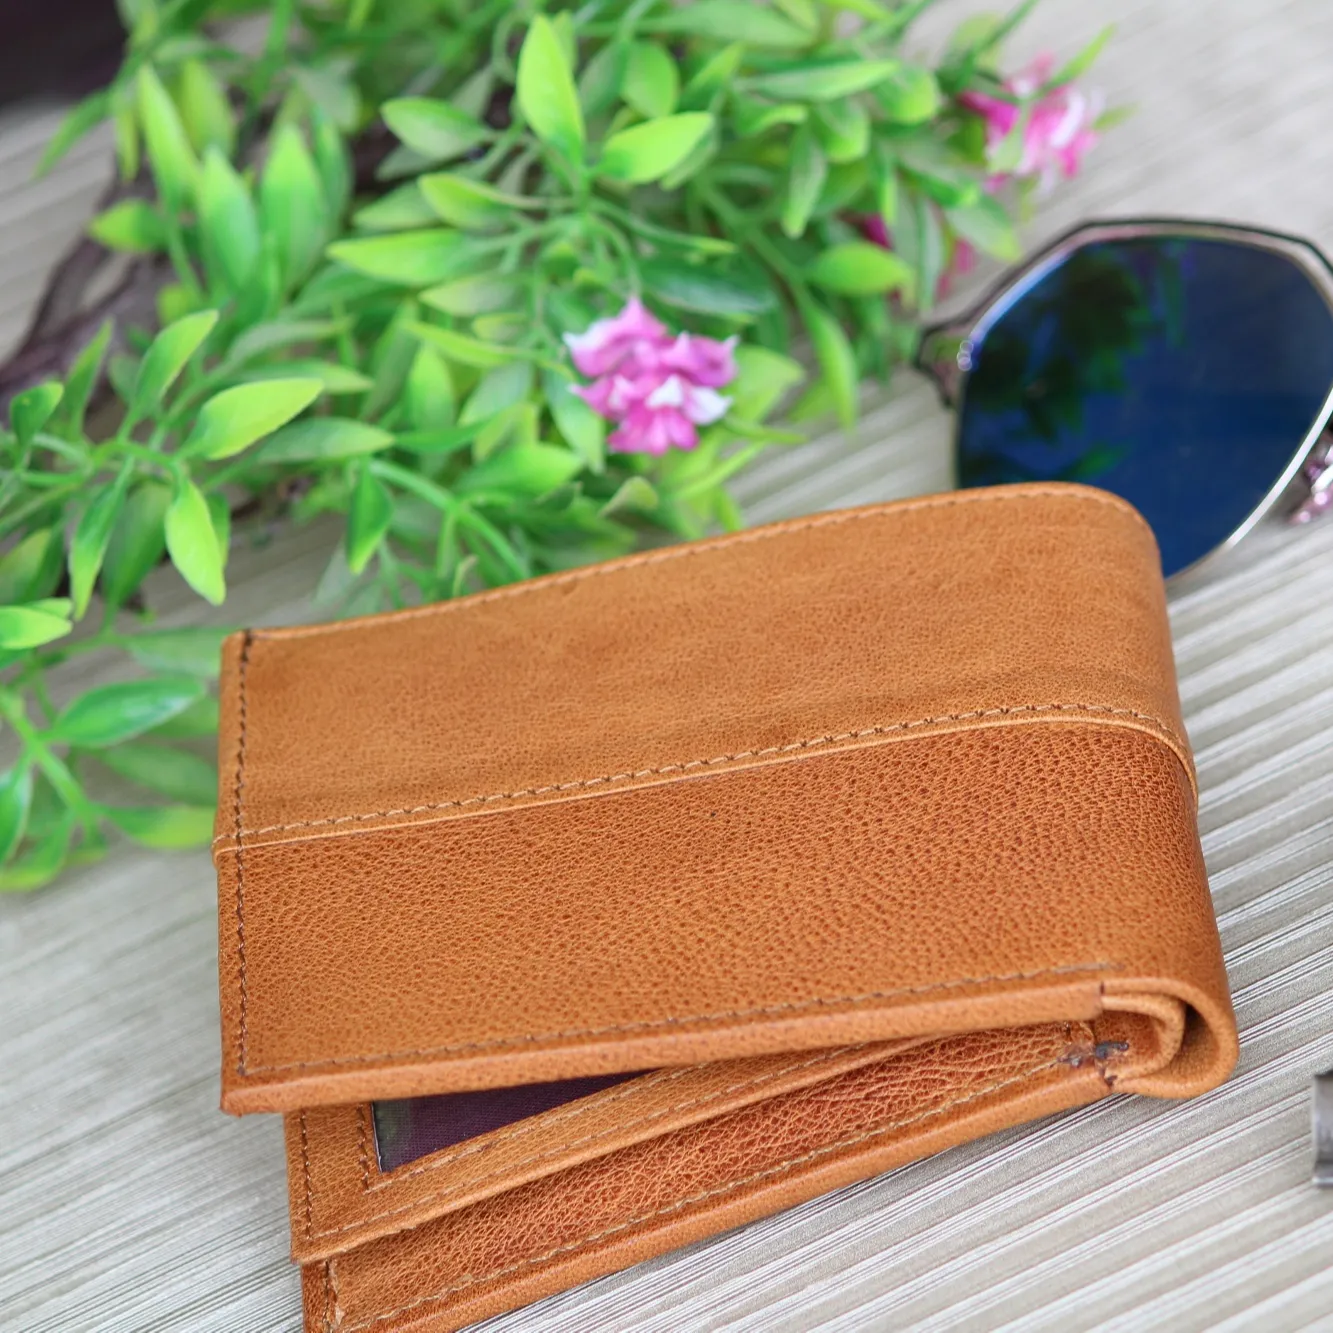 Новый стиль, высококачественные бумажники из коричневой кожи, персонализированный бумажник, бумажник из натуральной кожи